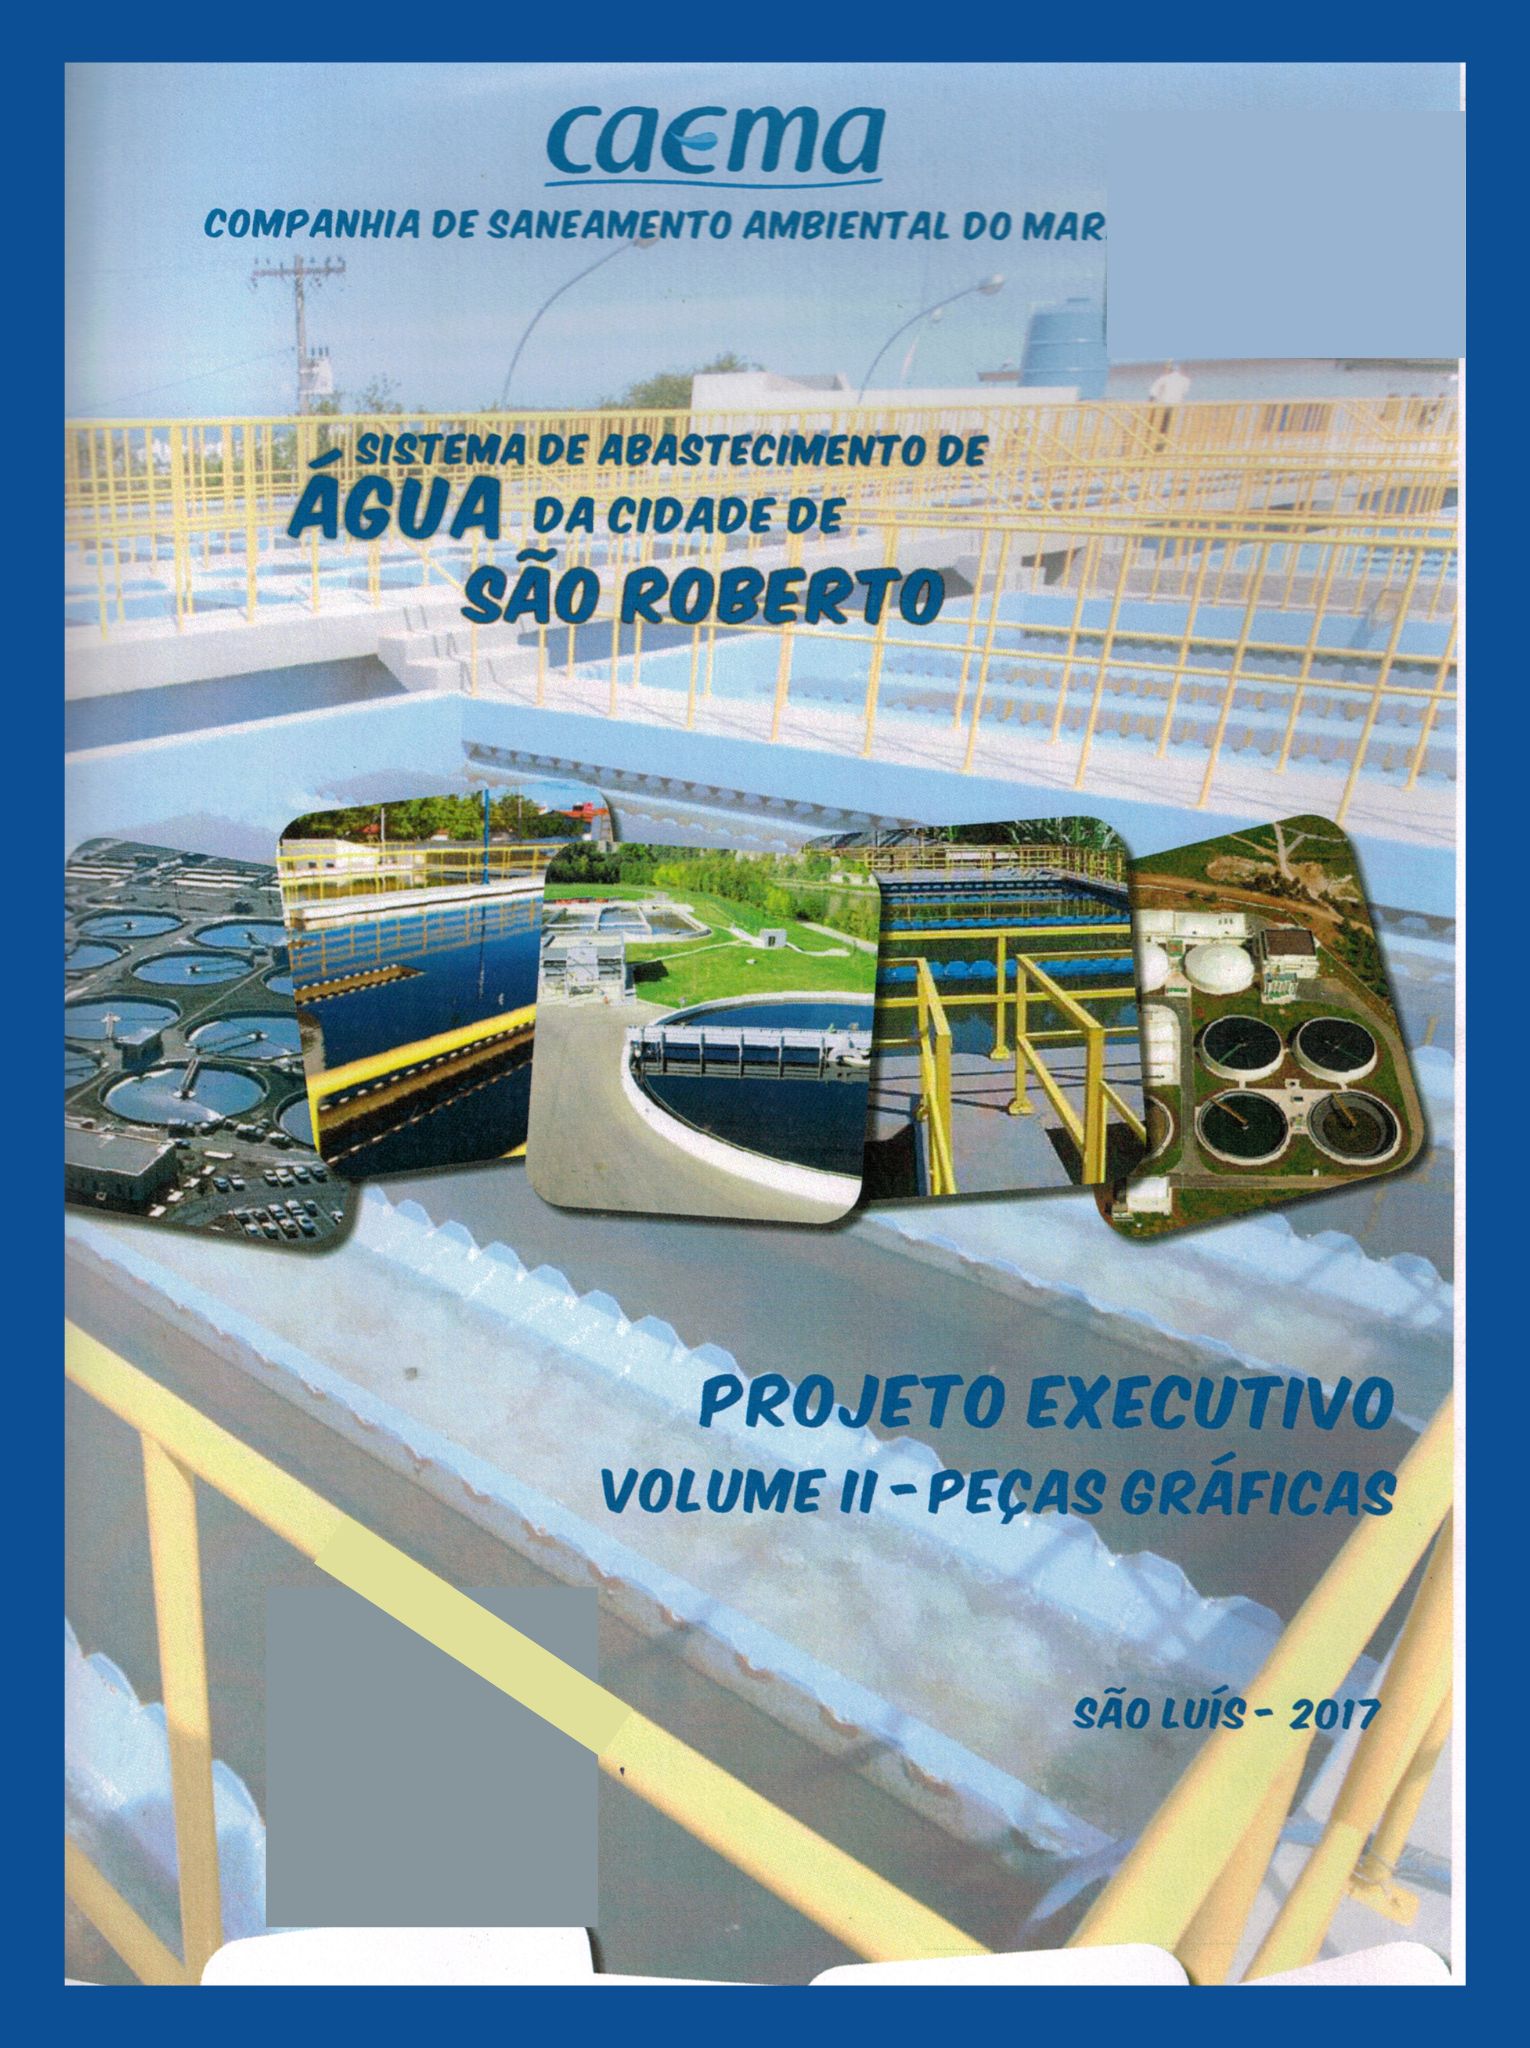 Imagem da capa do Projeto Técnico com informações de titulo e autoria.